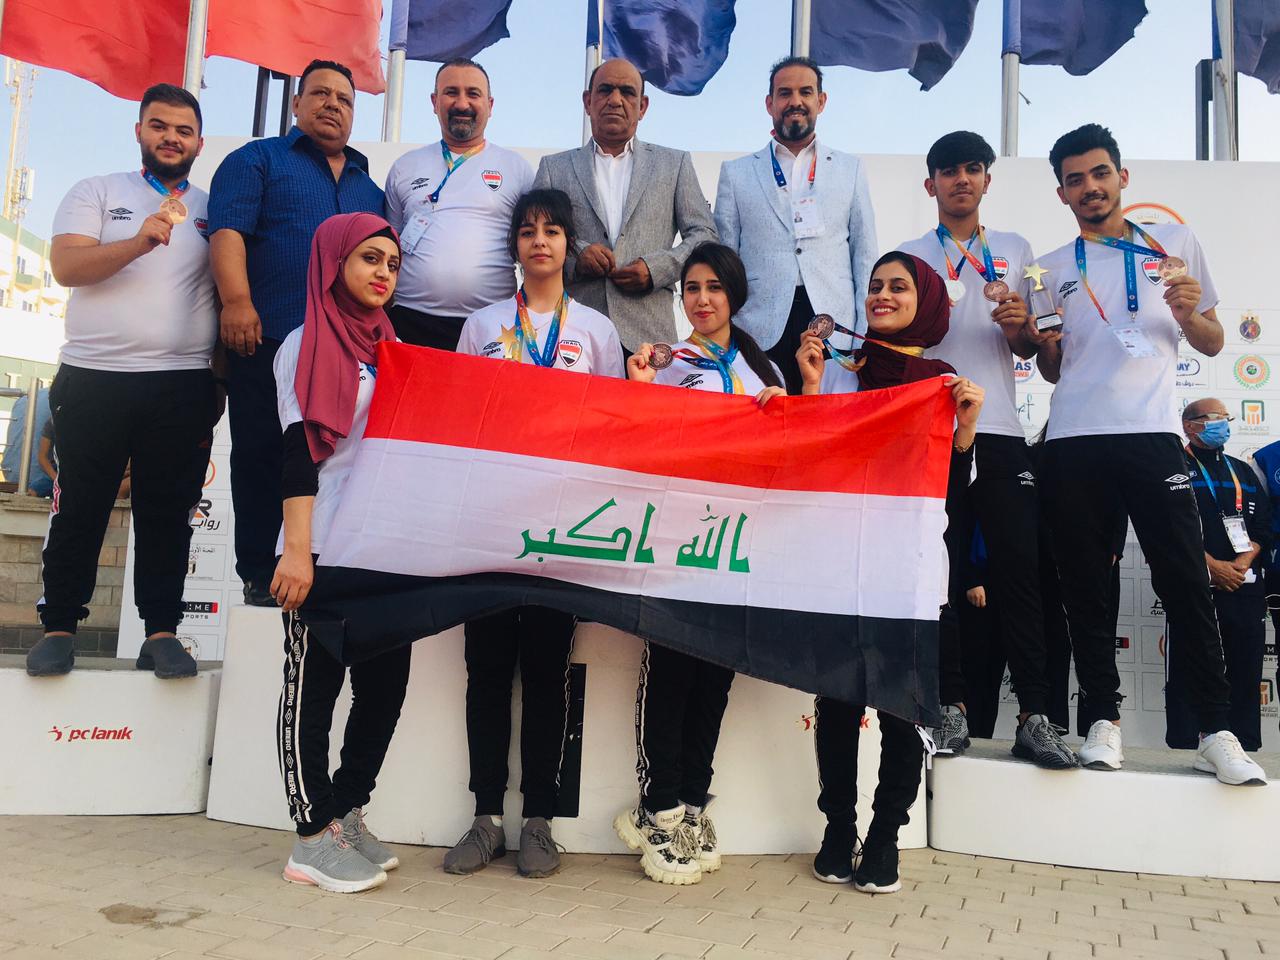 المنتخب العراقي بالرماية يحصد اربع اوسمة في البطولة العربية